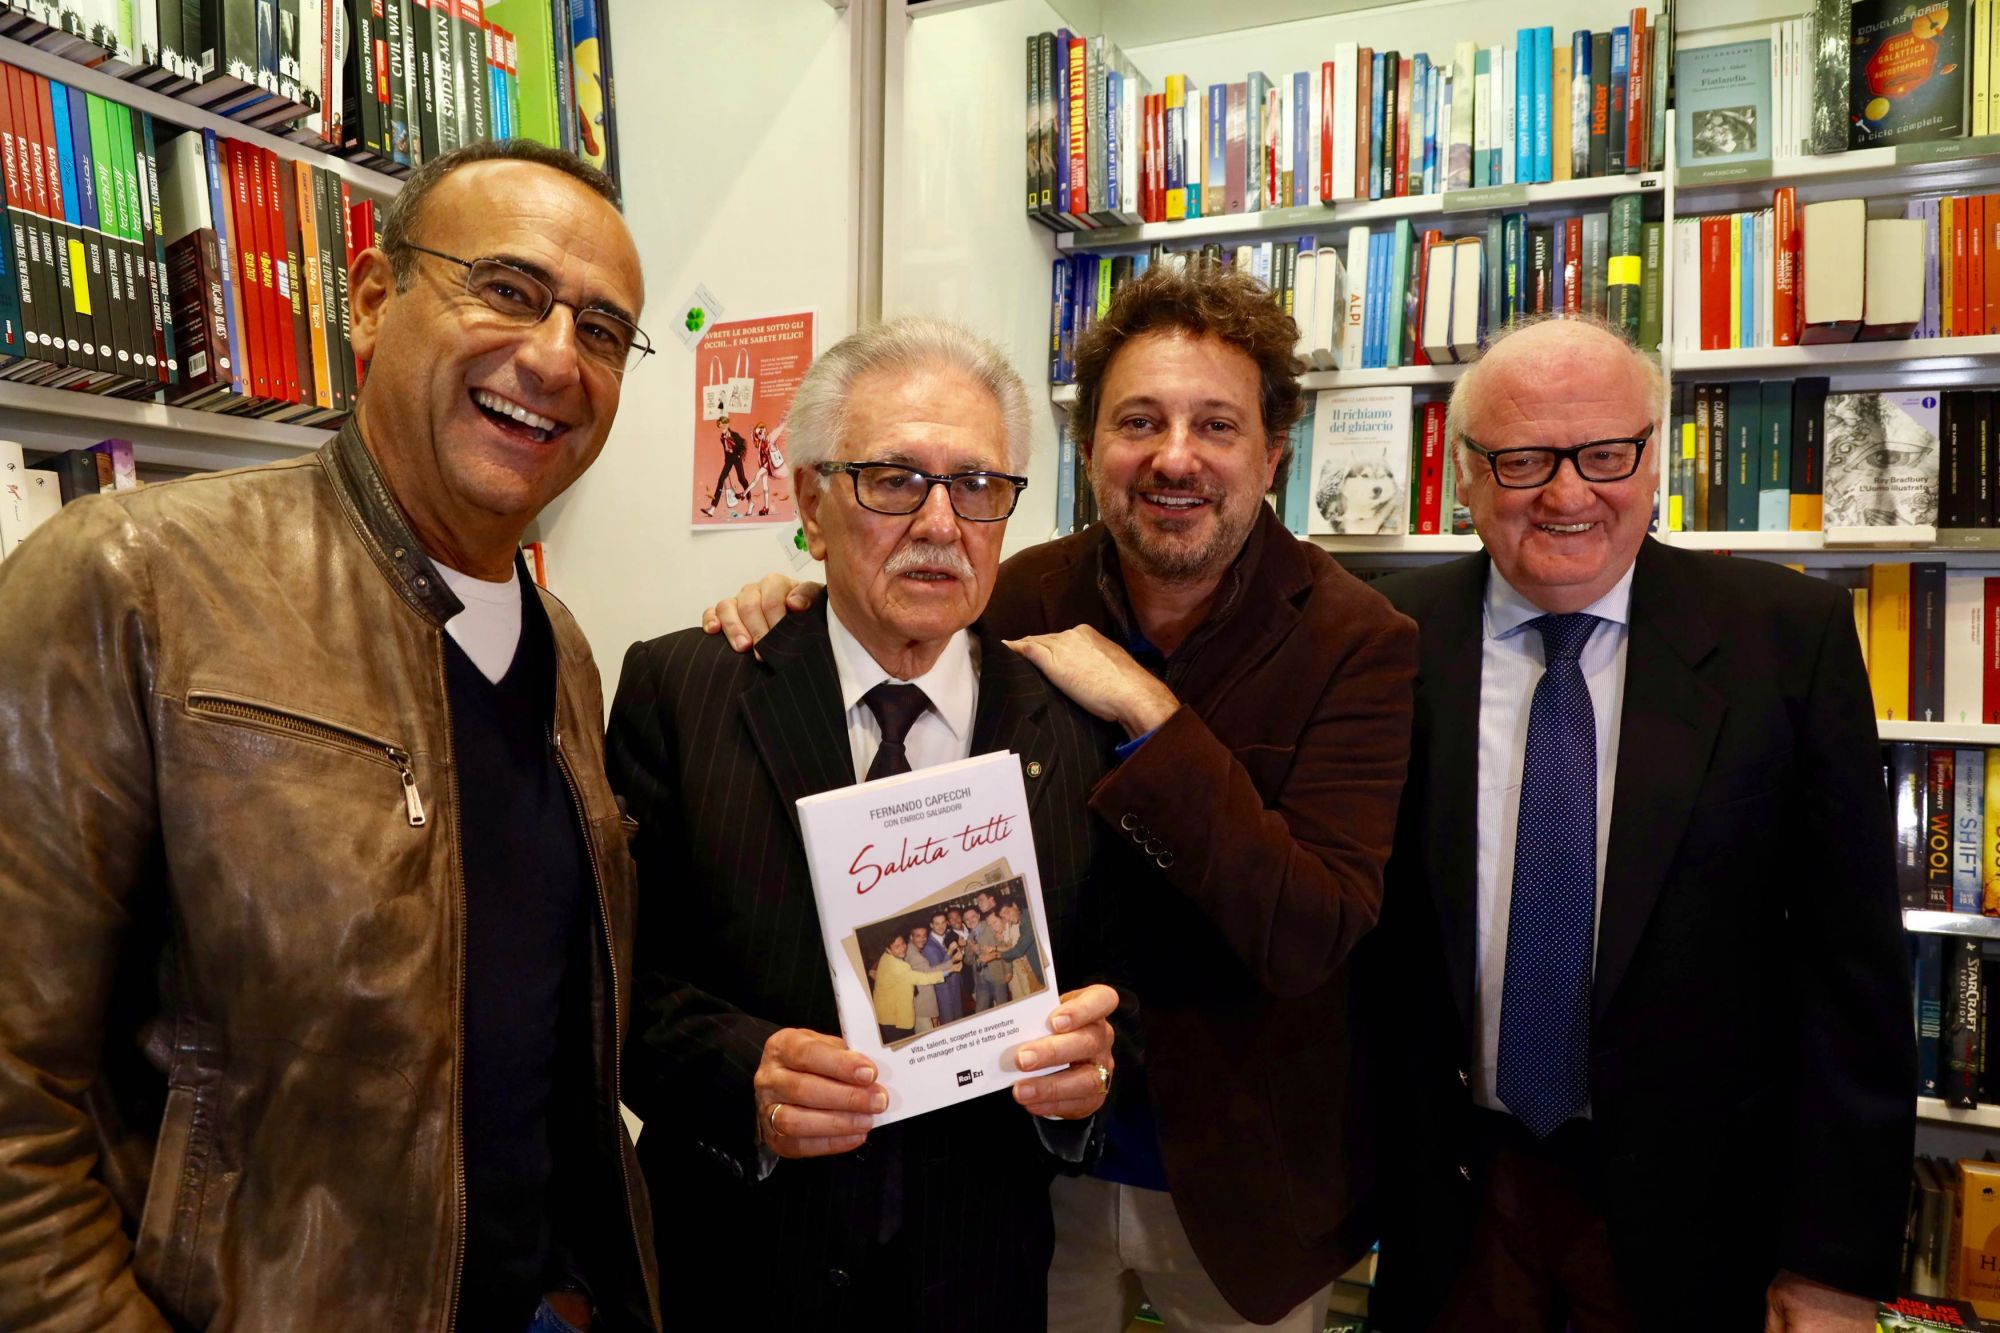 Il libro “Saluta tutti” scritto da Fernando Capecchi ed Enrico Salvadori all’Esplanade